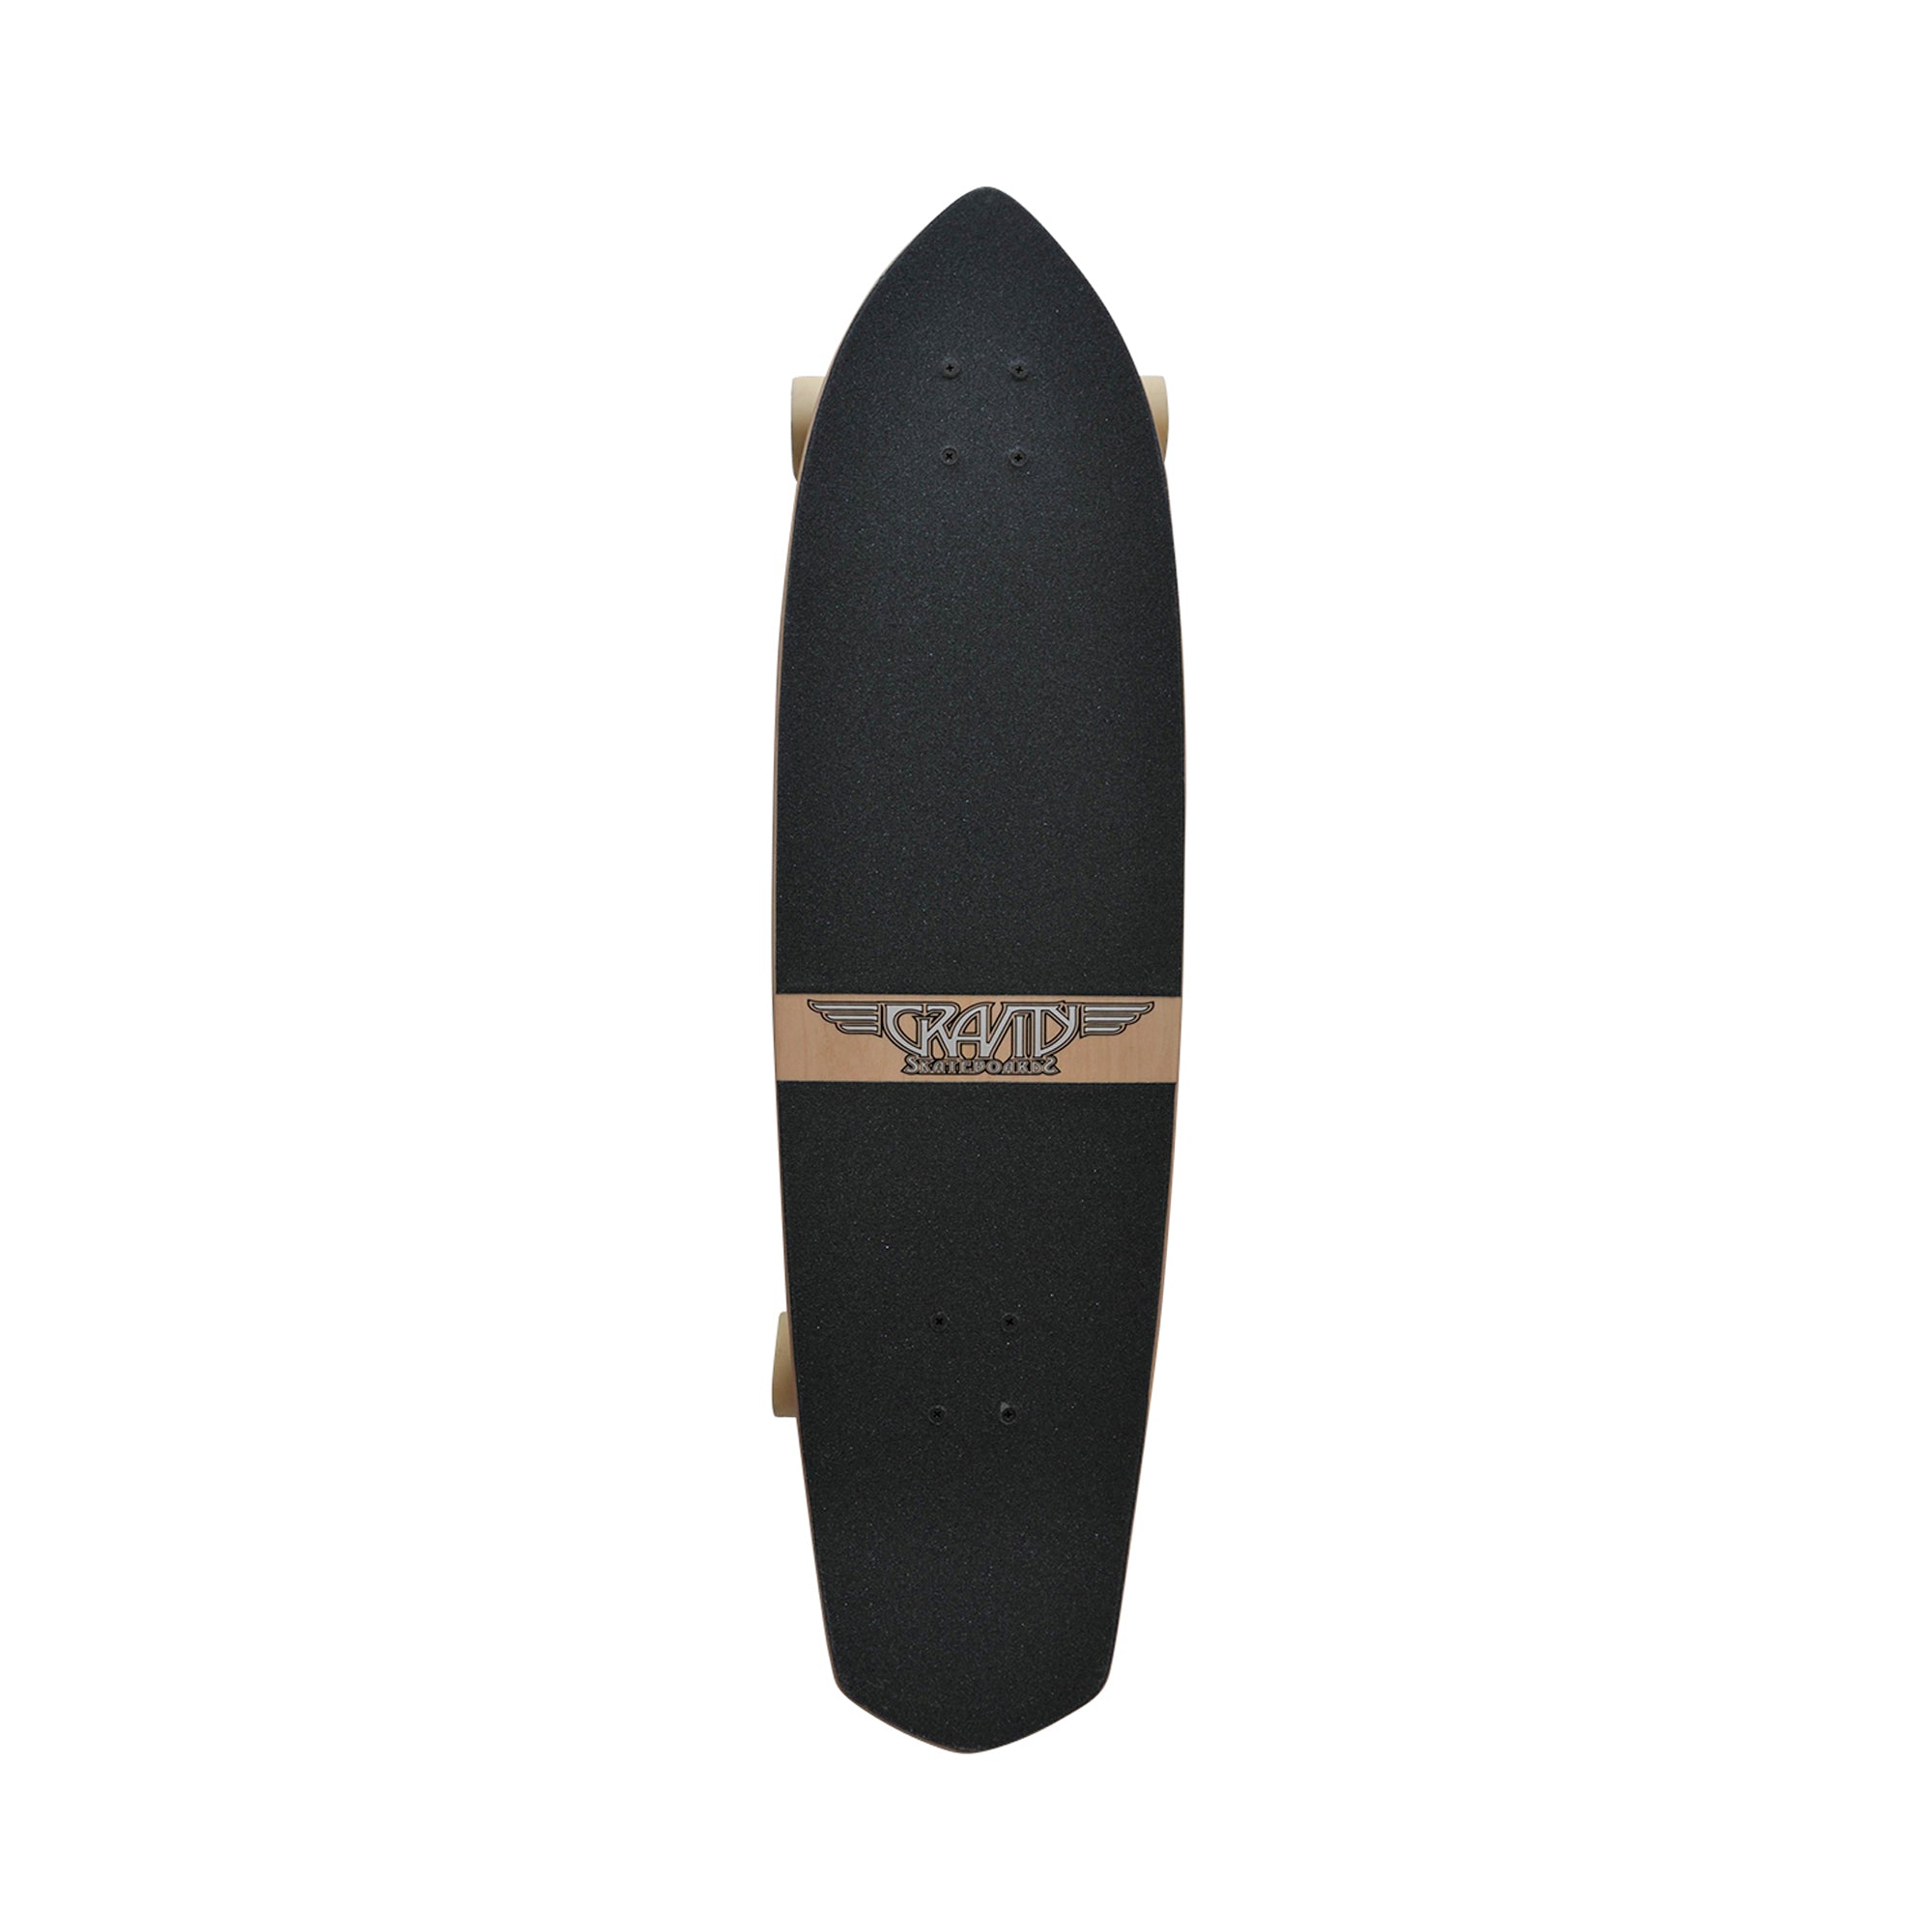 Gravity Last Resort 36" Longboard Skateboard